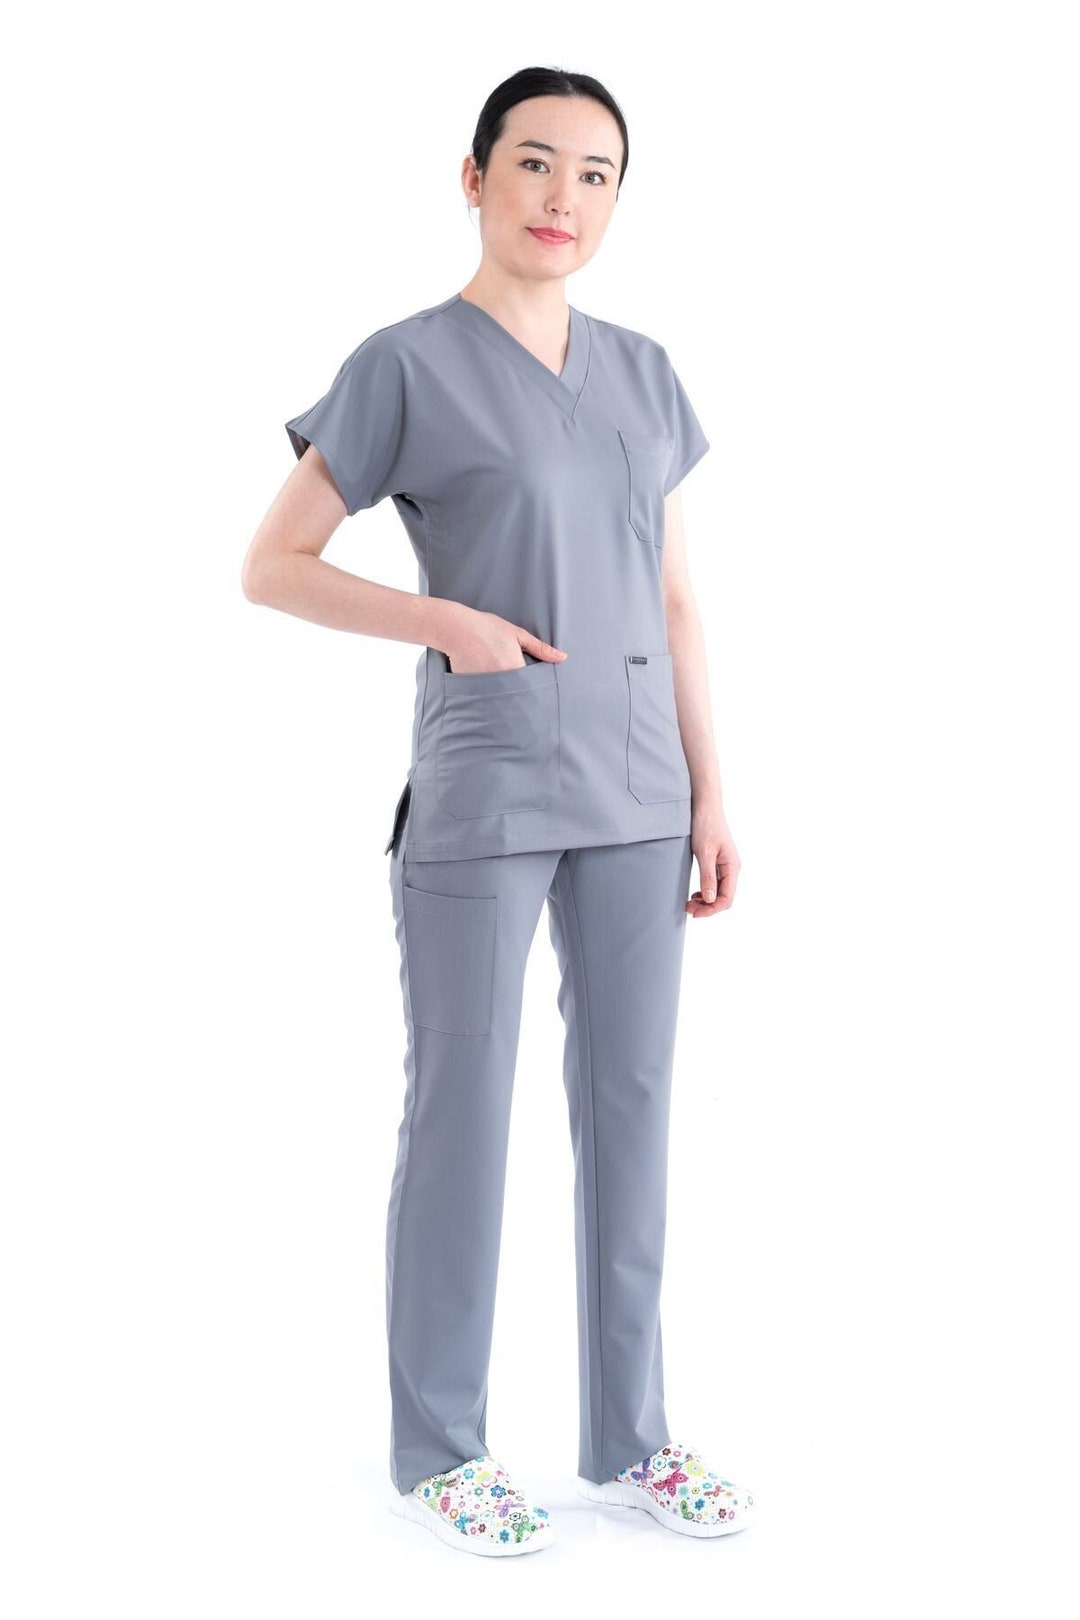 Comfortable Cloud Grey Nurse Scrub Set, Nurse Uniform, Custom Scrub, Nurse  Uniform Dress, Medical Scrub for Woman, Light Scrub Set, BT1003LV 